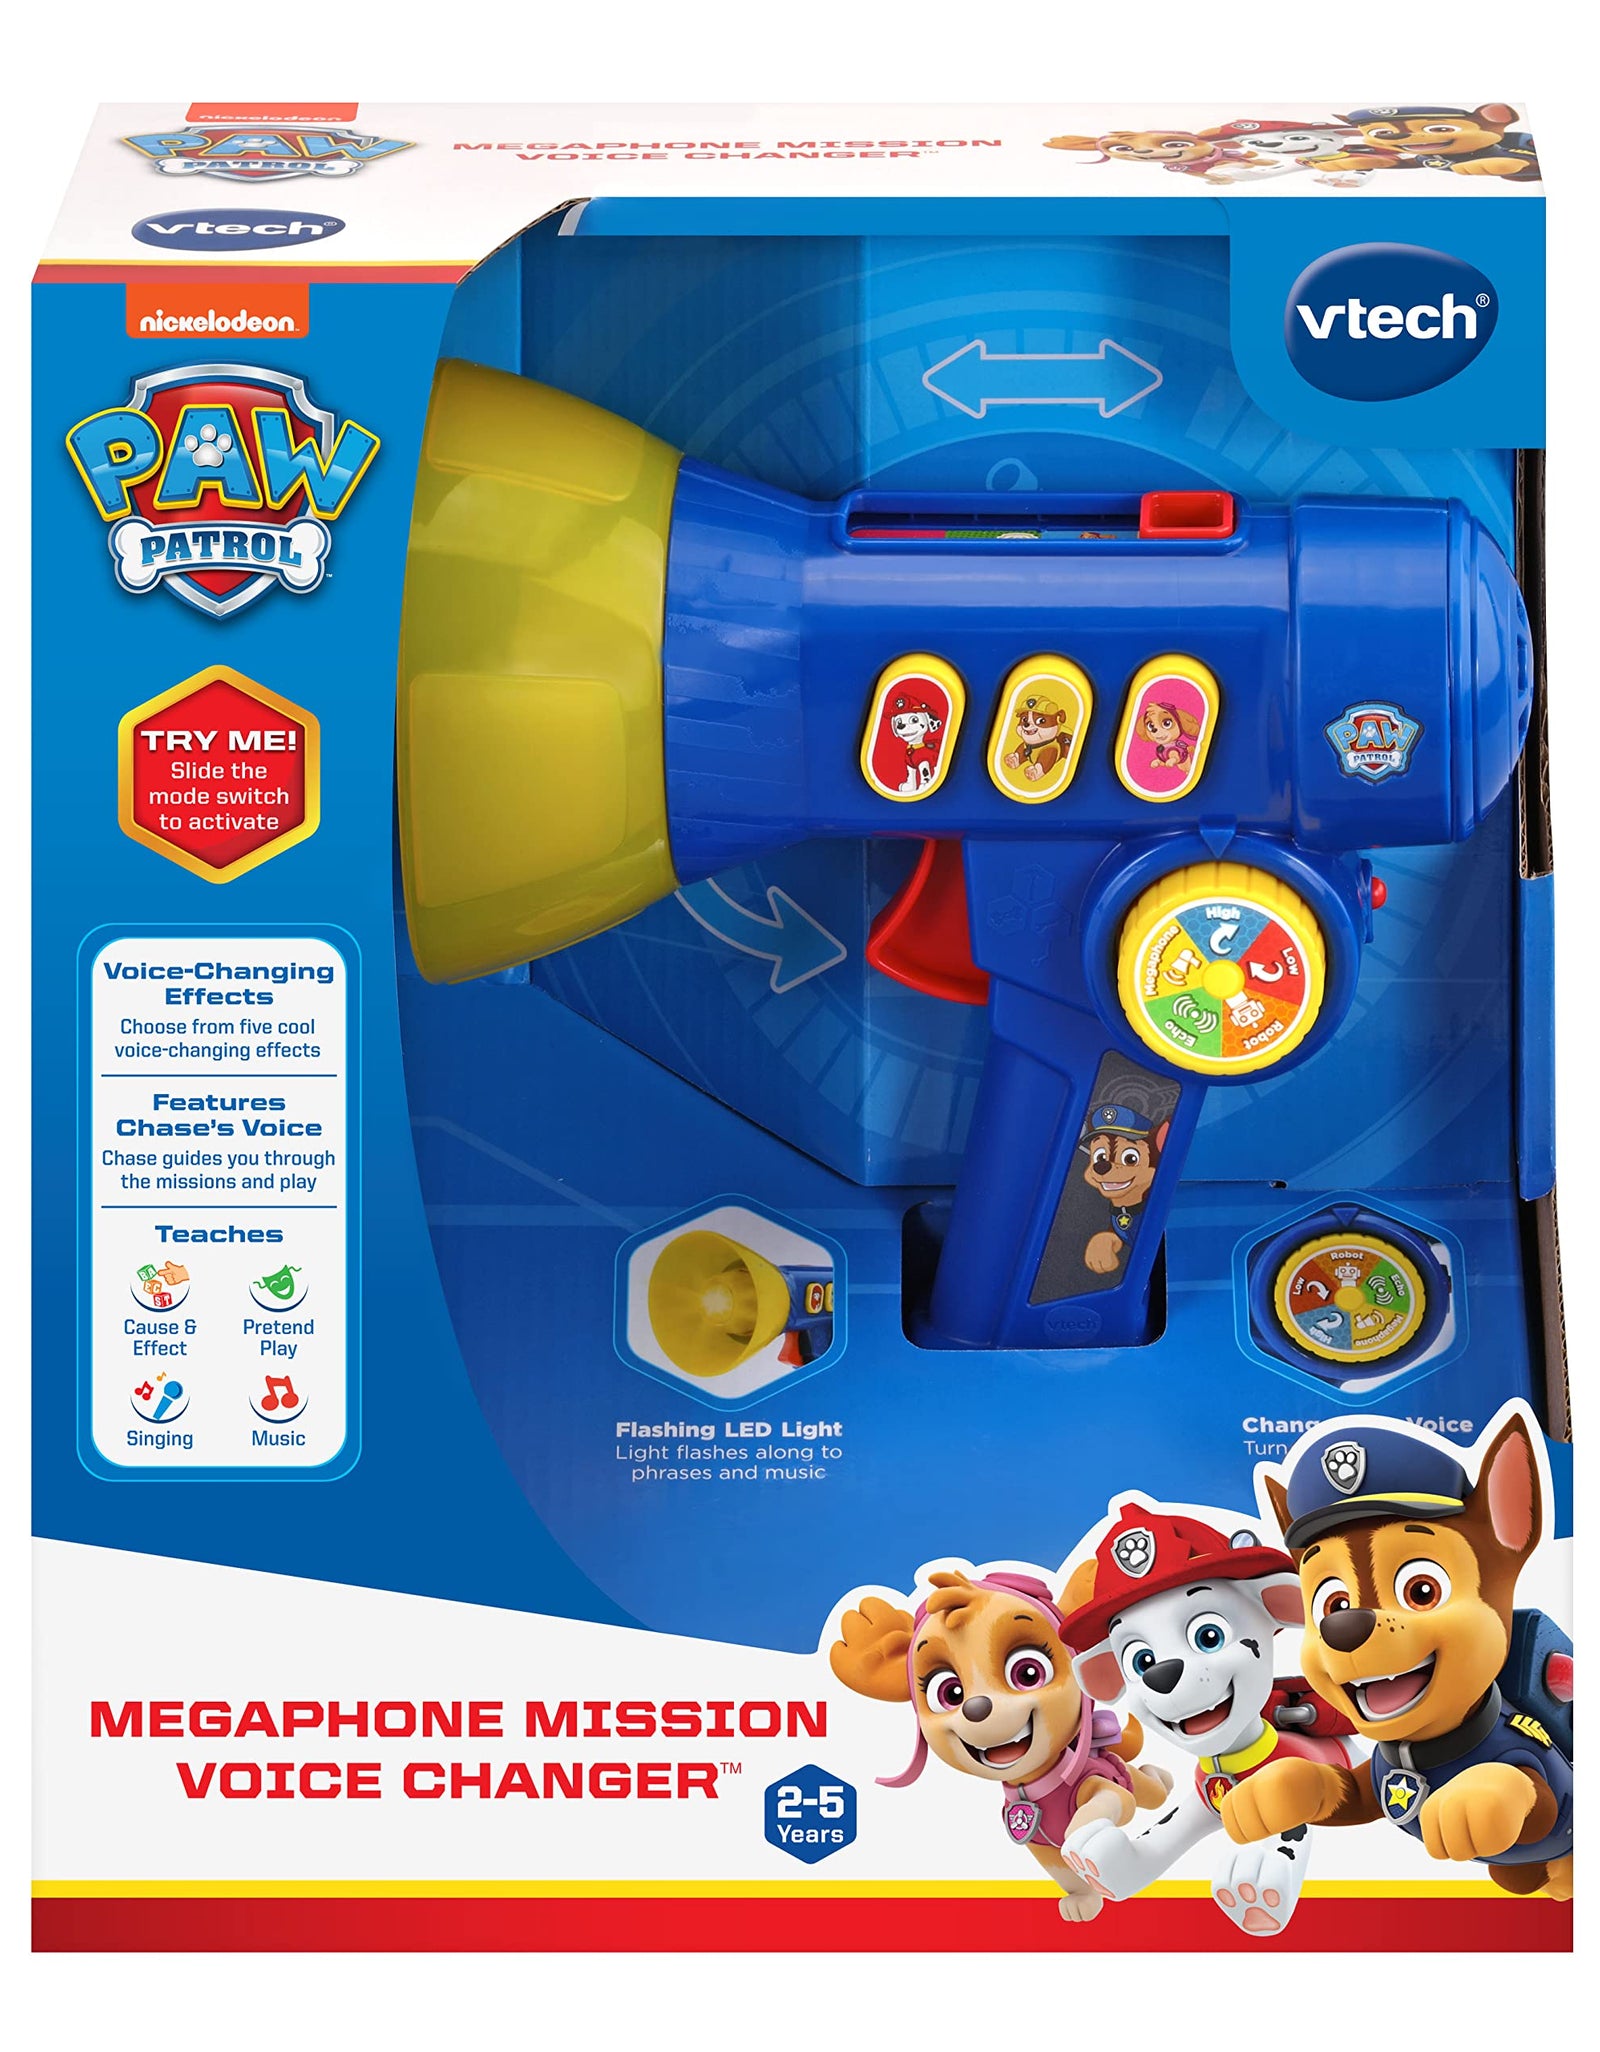 VTech PAW Patrol Megaphone Mission Voice Changer, Blue